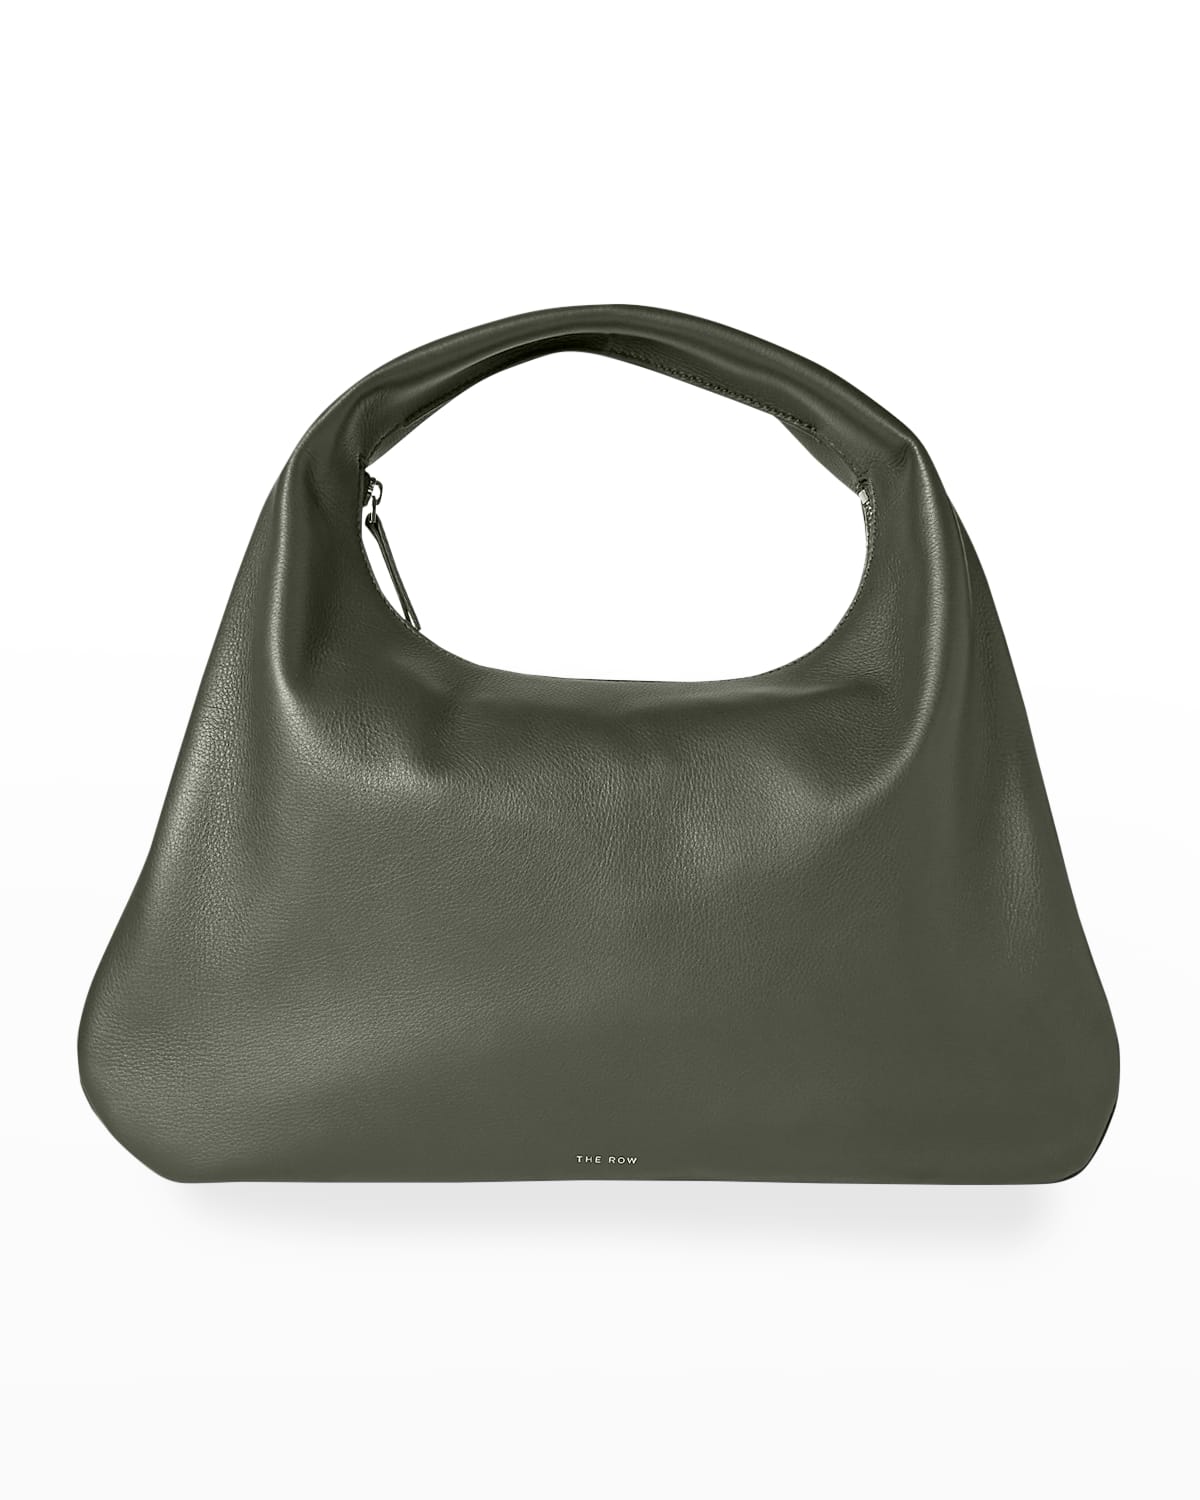 THE ROW Small Everyday Shoulder Bag | Smart Closet